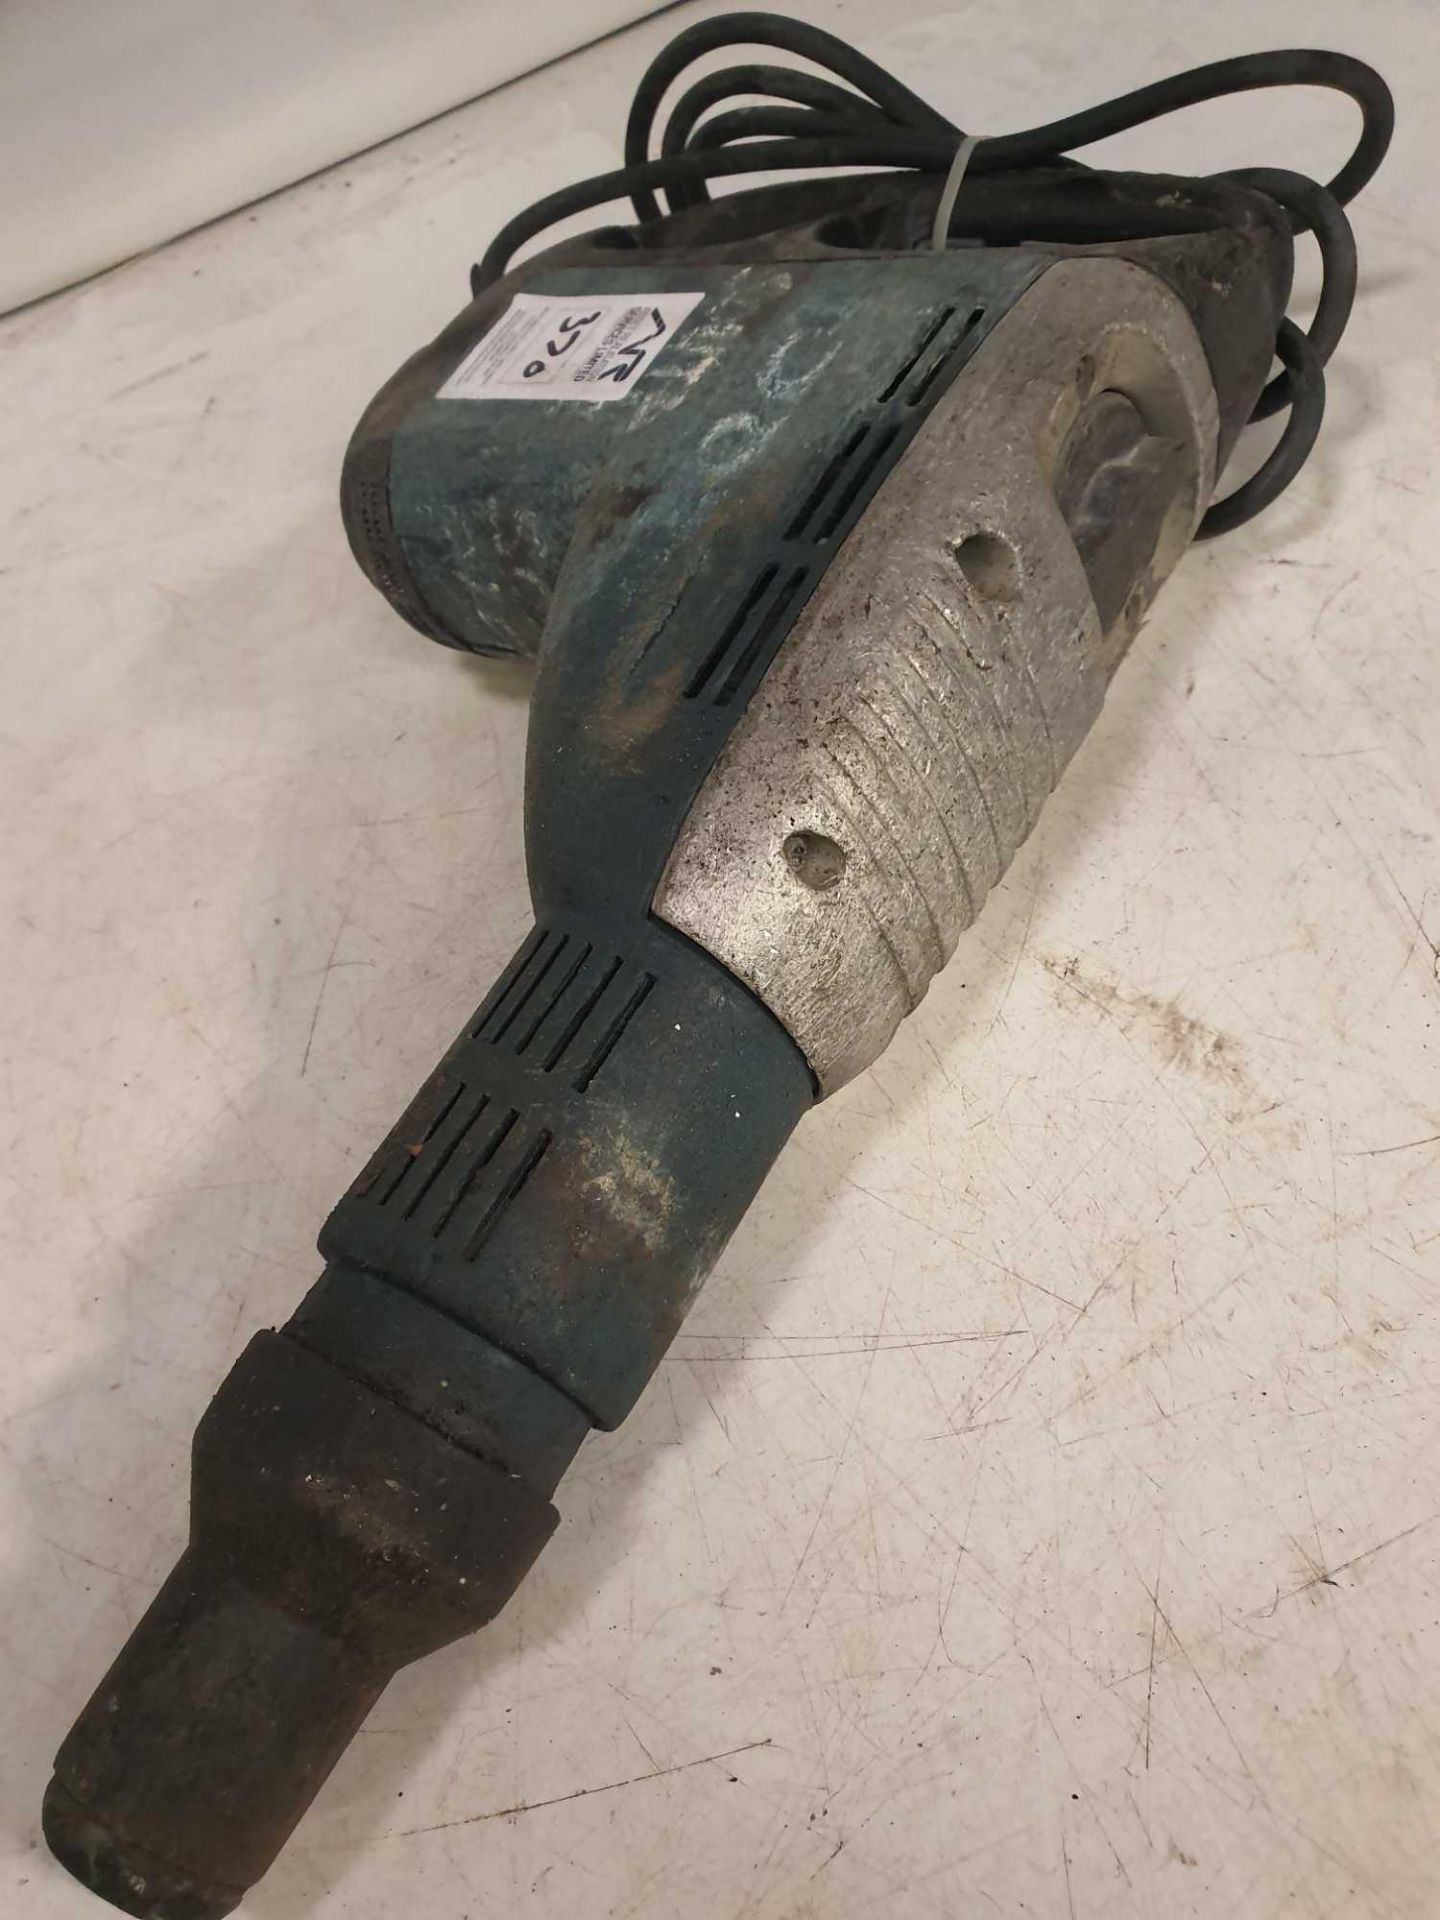 Bosch 110v hammer drill - Image 2 of 2